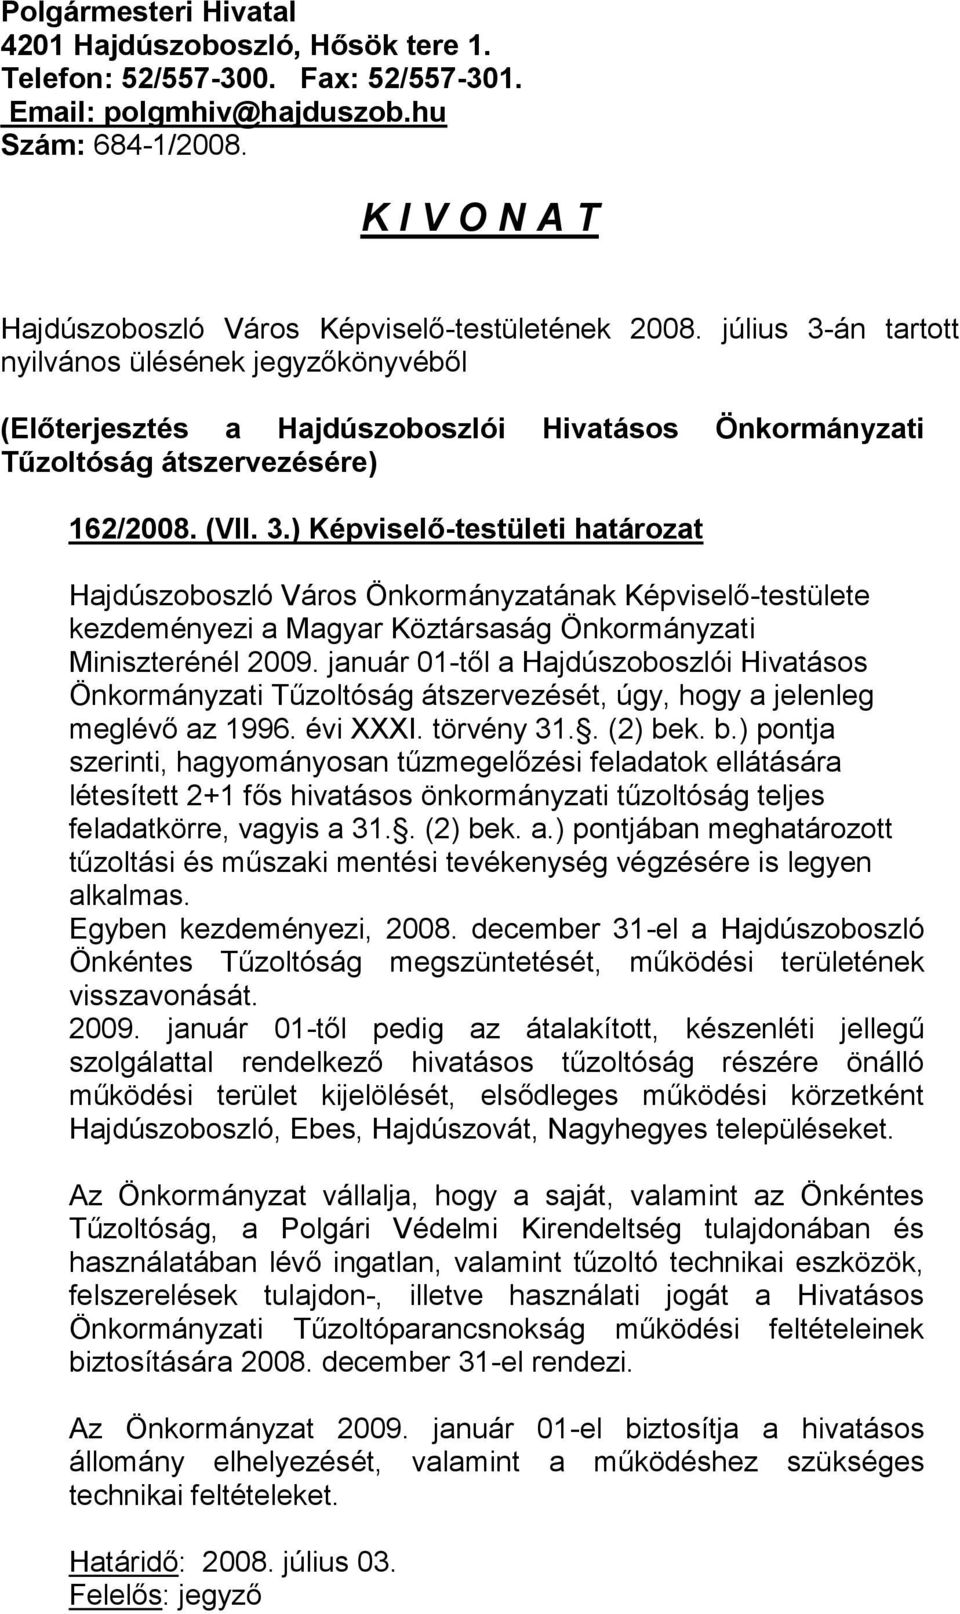 július 3-án tartott nyilvános ülésének jegyzőkönyvéből (Előterjesztés a Hajdúszoboszlói Hivatásos Önkormányzati Tűzoltóság átszervezésére) 162/2008. (VII. 3.) Képviselő-testületi határozat kezdeményezi a Magyar Köztársaság Önkormányzati Miniszterénél 2009.